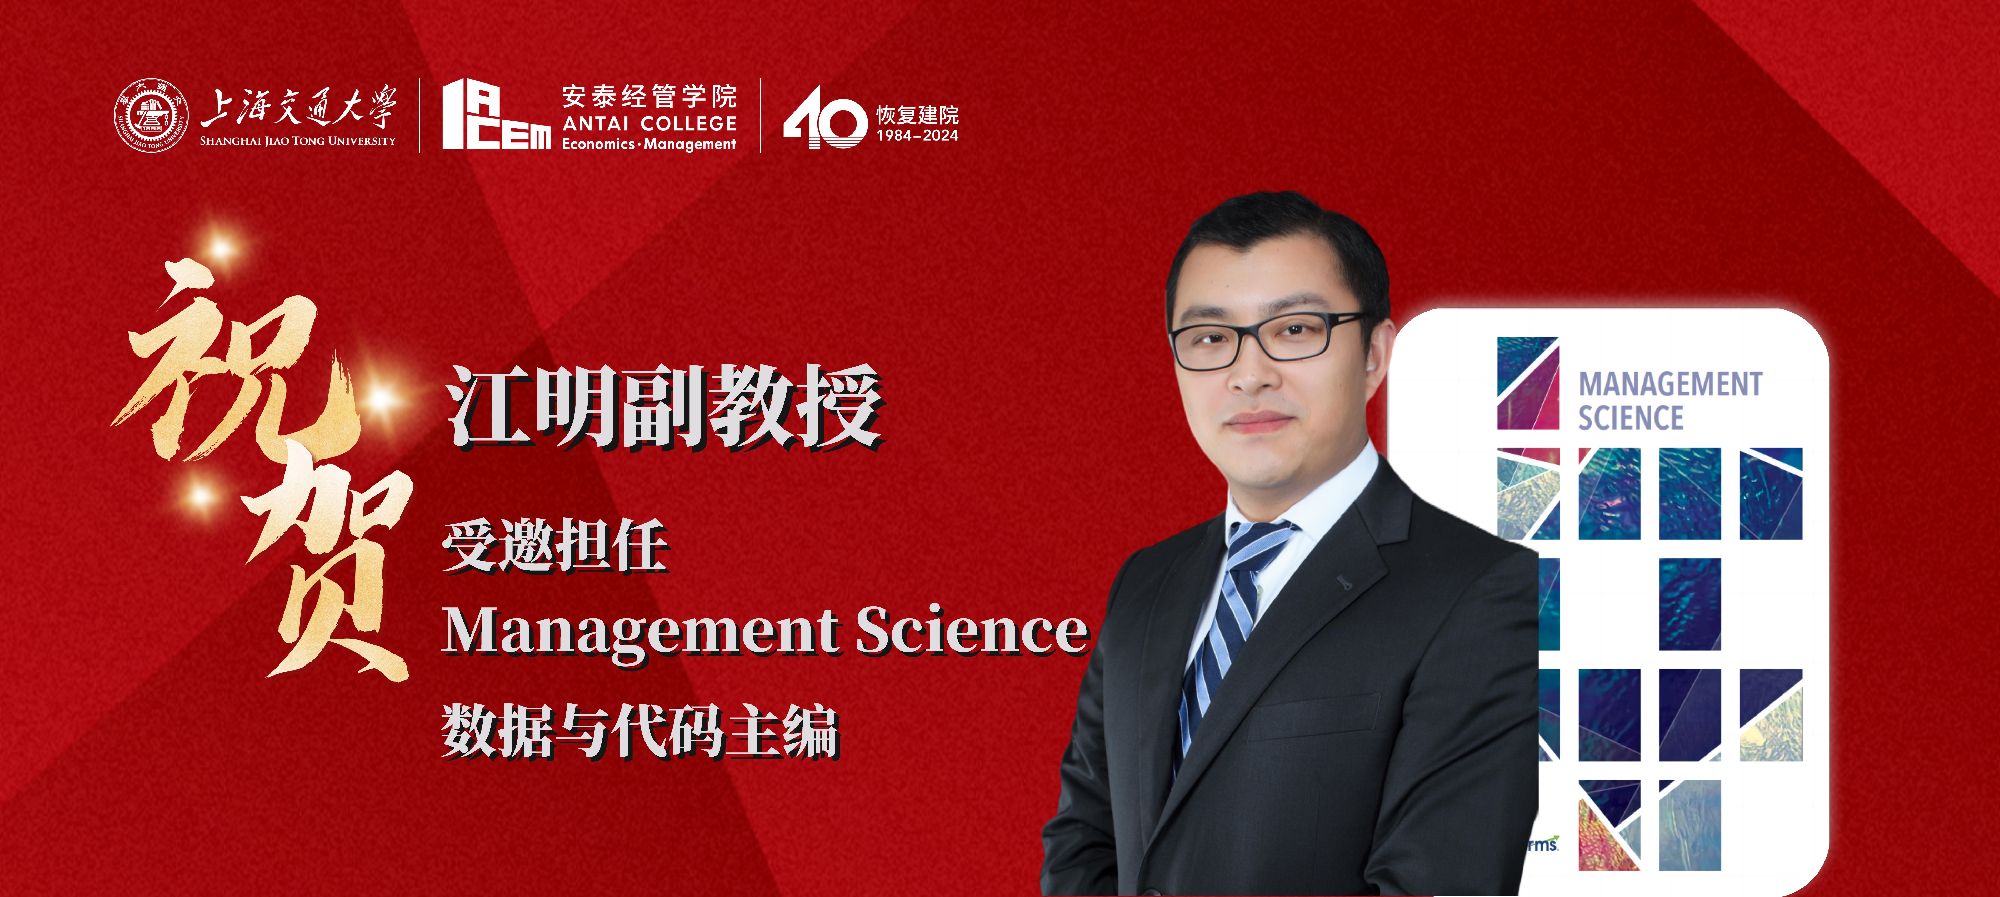 江明副教授受邀担任Management Science期刊数据与代码主编